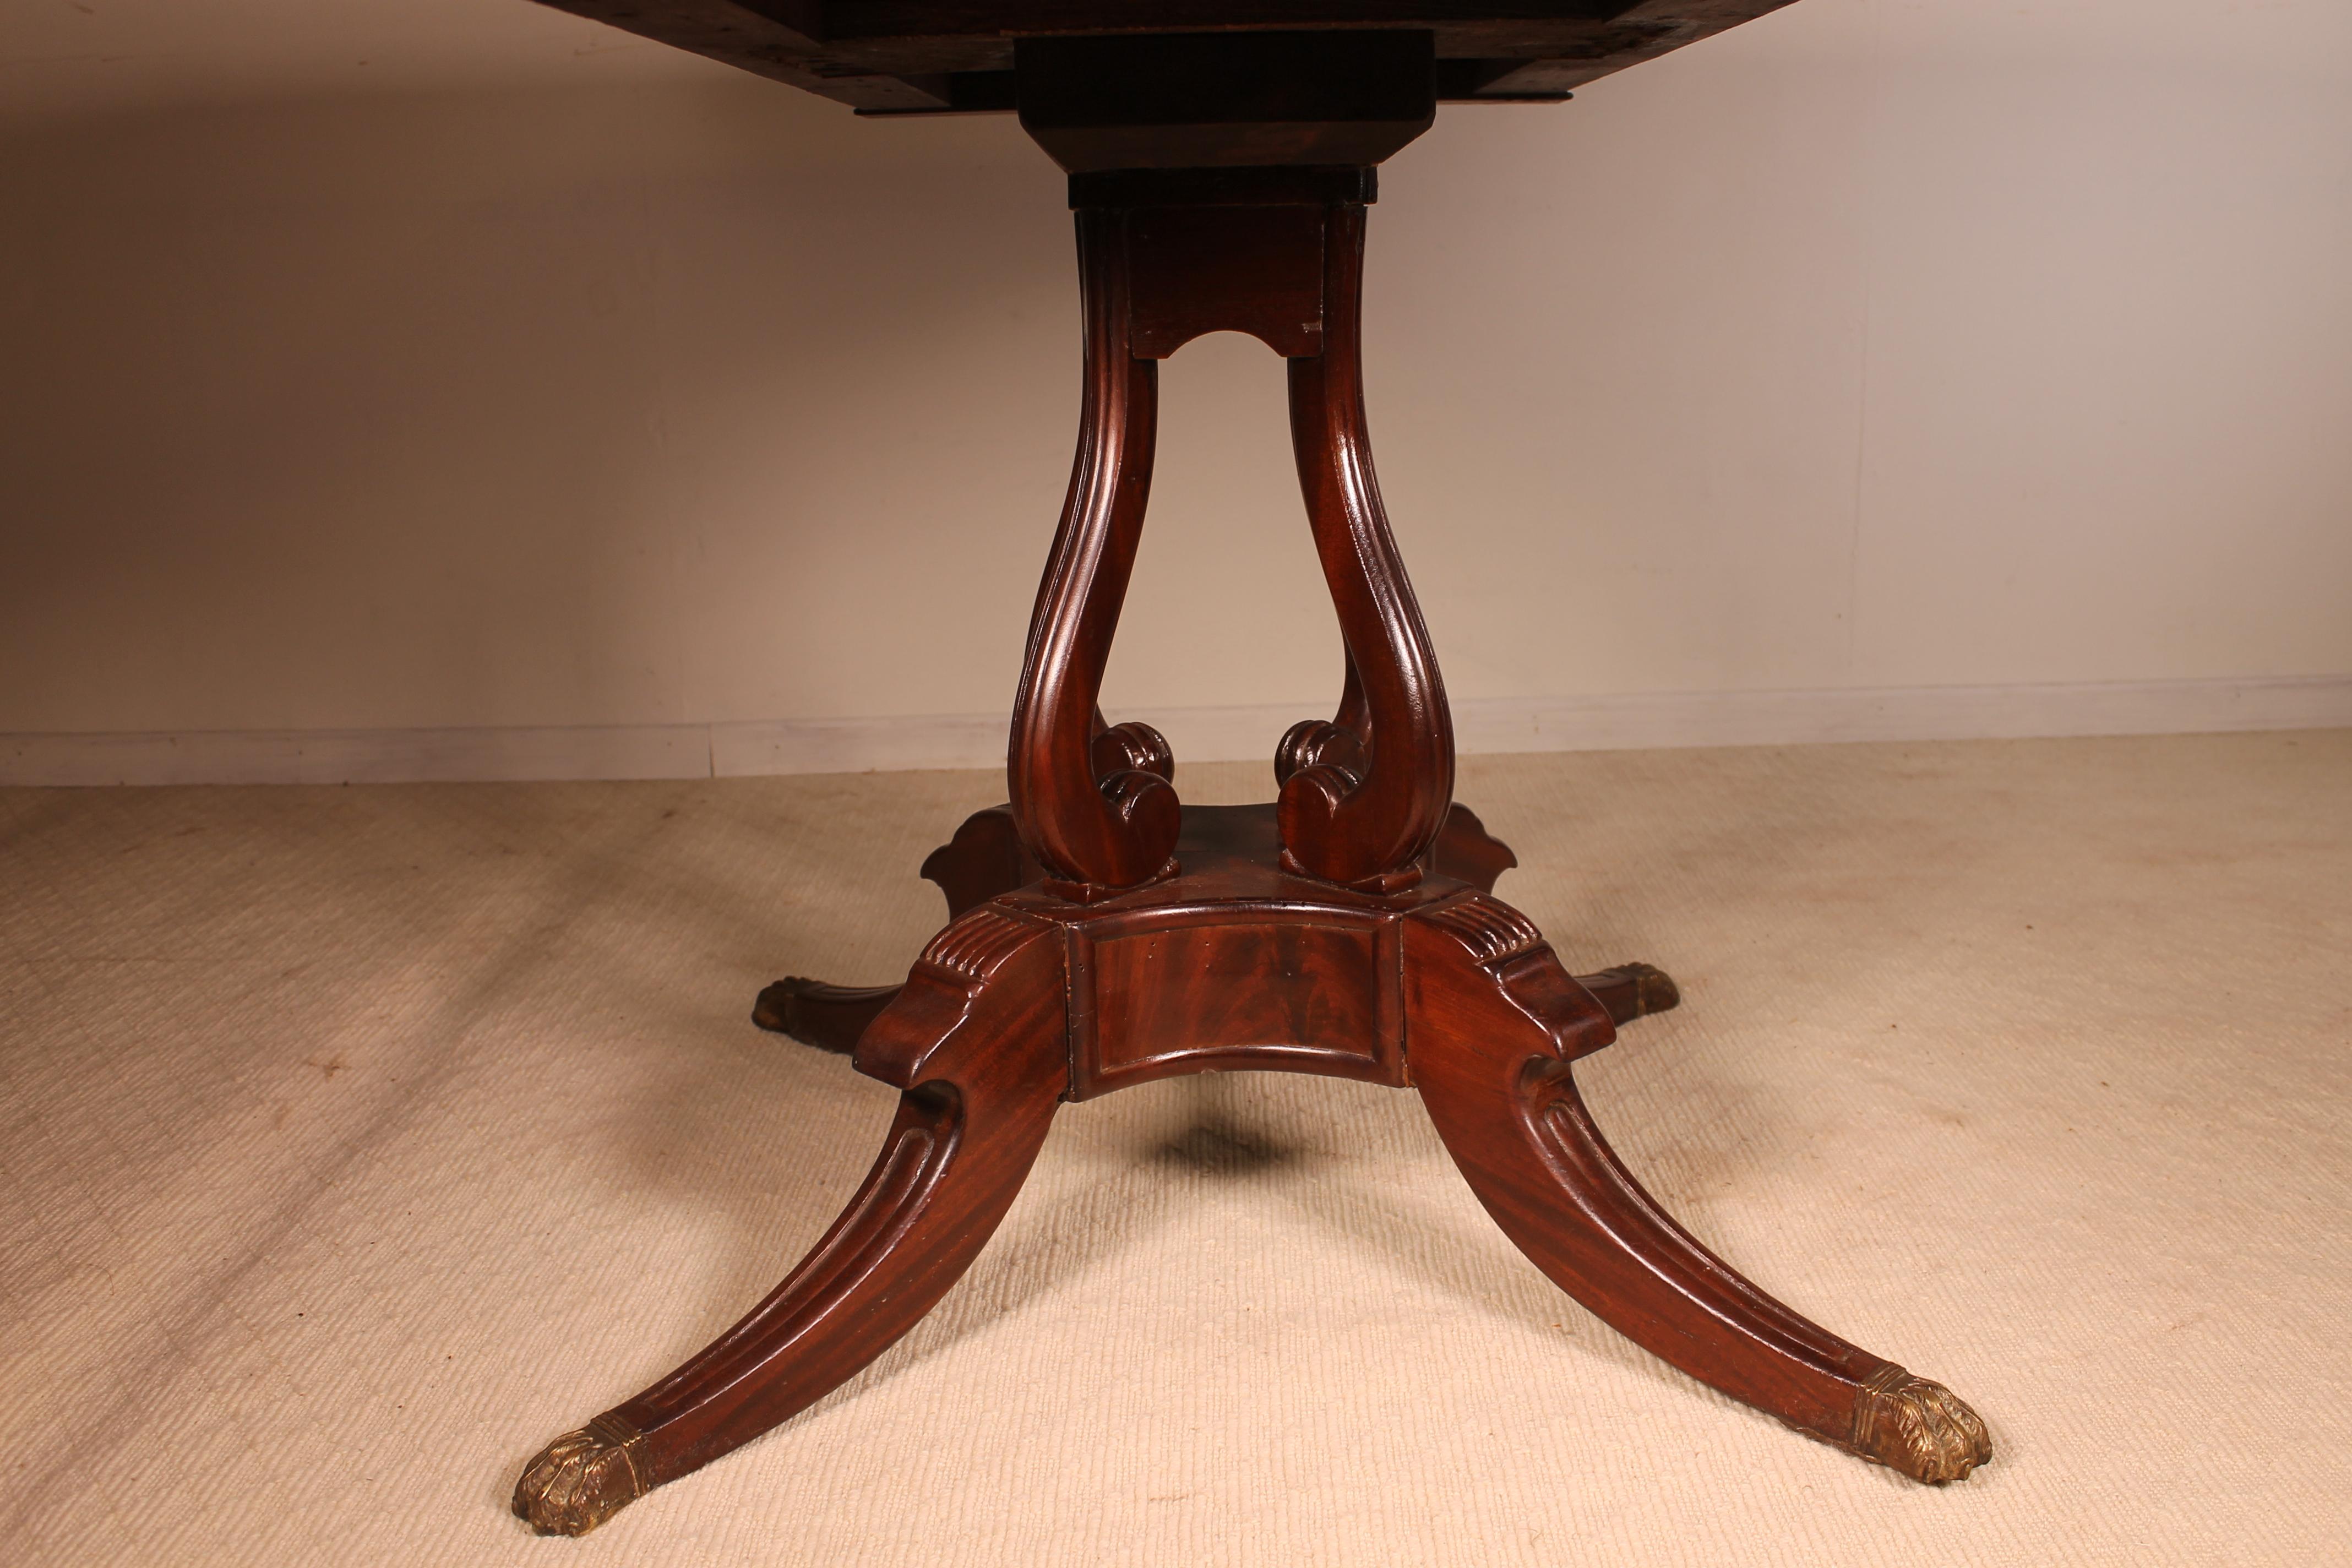 Ein sehr schöner Regency Pembroke Tisch aus Mahagoni aus dem ersten Teil des 19. Jahrhunderts um 1820.
Dieses feine antike Stück hat eine sehr schöne Mahagoni-Massivplatte, die auf vier kannelierten Stützen auf einem vierteiligen Sockel ruht. Der